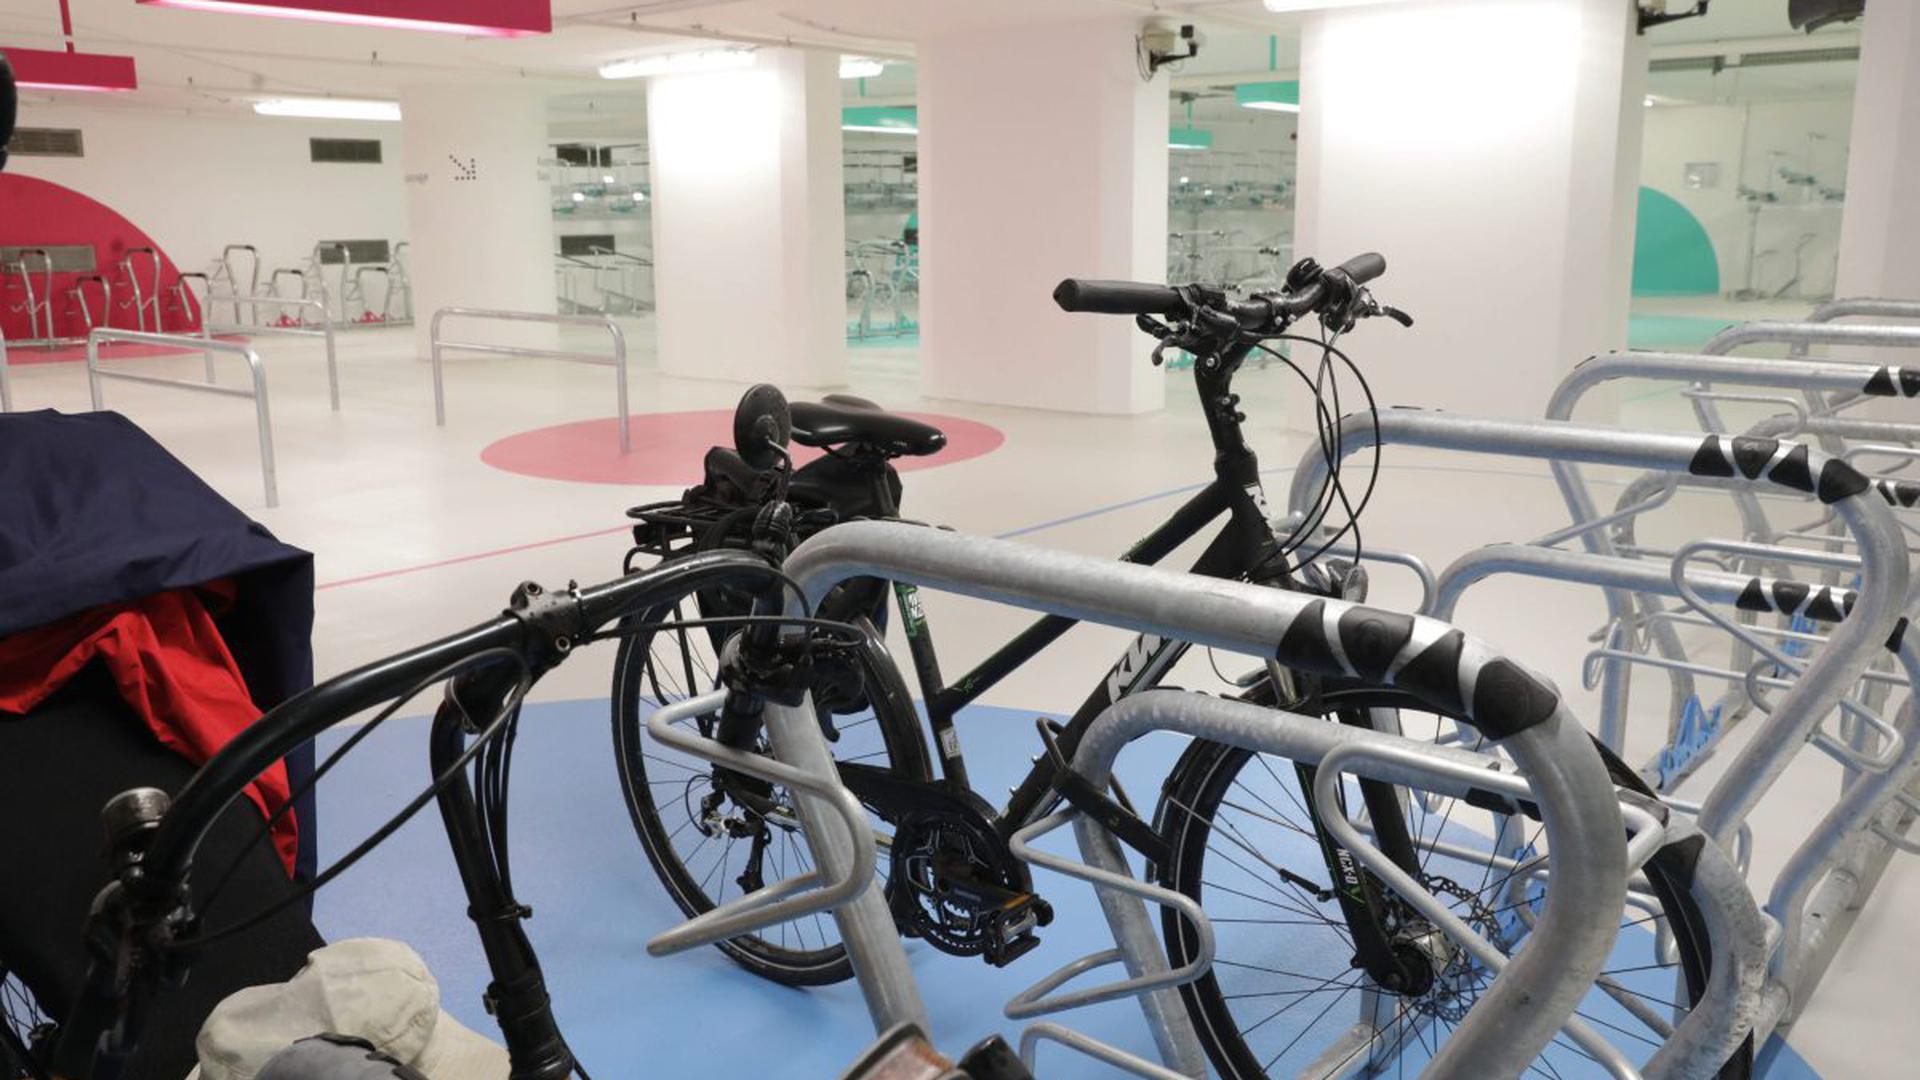 Für einen Euro am Tag können Fahrradfahrer ihr Rad in der hellen Station Süd am Karlsruher Hauptbahnhof abstellen.